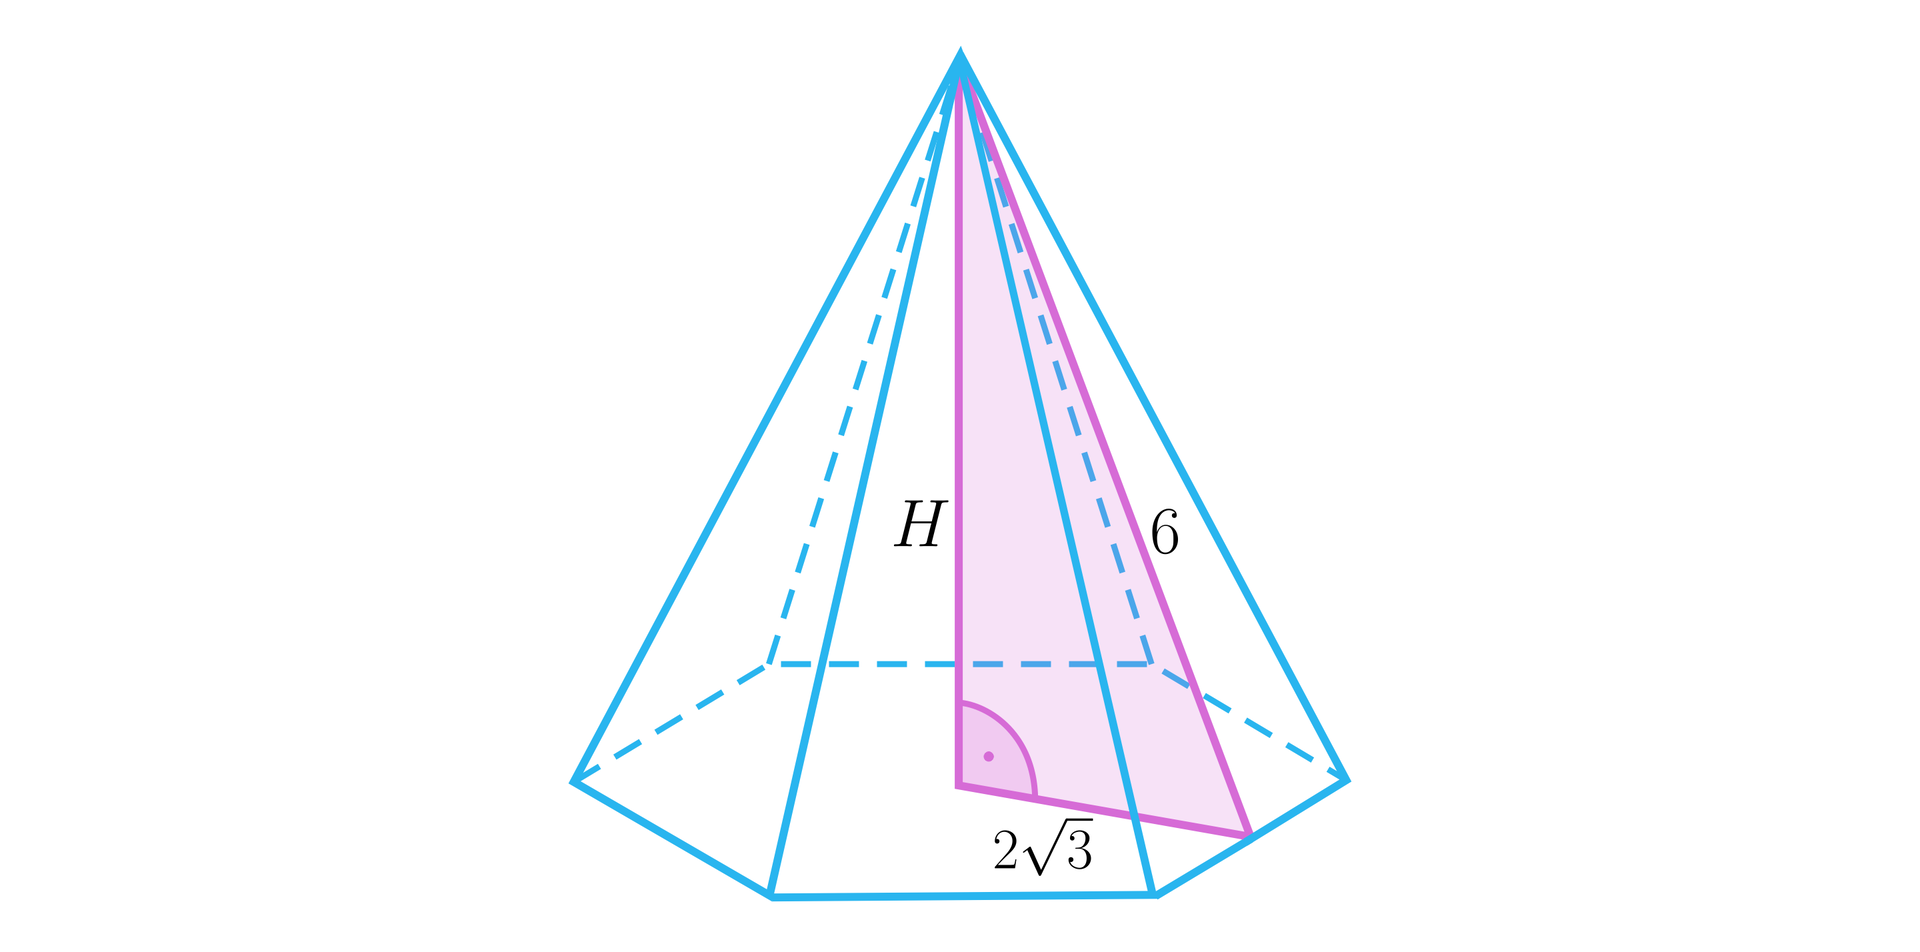 Ilustracja przedstawia ostrosłup, którego podstawą jest sześciokąt. W ostrosłupie zaznaczono jego wysokość H, jest ona pod kątem prostym do podstawy. W ścianie bocznej zaznaczono jej wysokość, ma ona długość sześć.  W ostrosłupie zaznaczono trójkąt składający się z wysokości ostrosłupa, wysokości ściany bocznej oraz fragmentu krawędzi podstawy, który łączy te odcinki. Odcinek ten ma długość 23. 